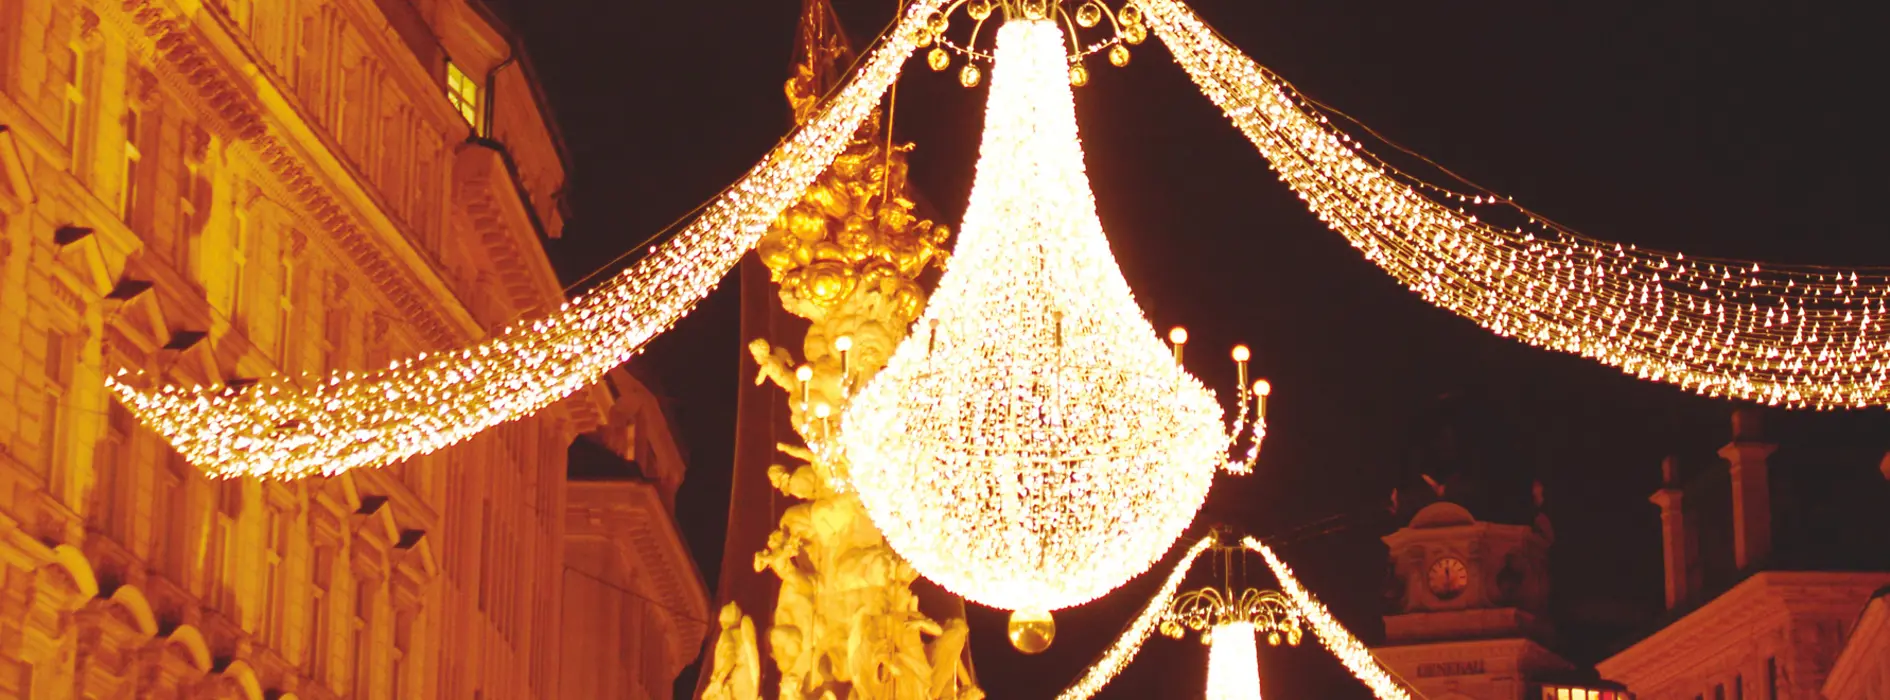 Christmas illuminations in Vienna